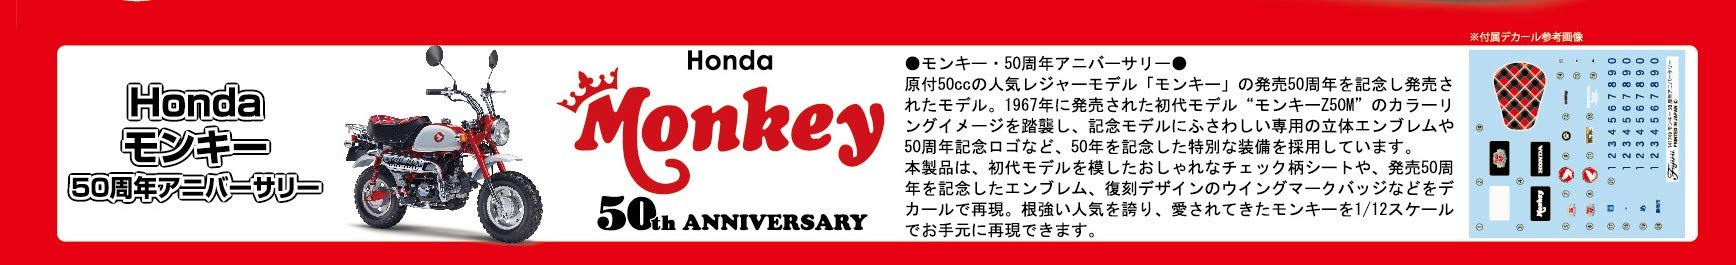 Fujimi Model 1/12 Bike Series Spot Honda Monkey 50th Anniversary Plastikmodell Bikespot